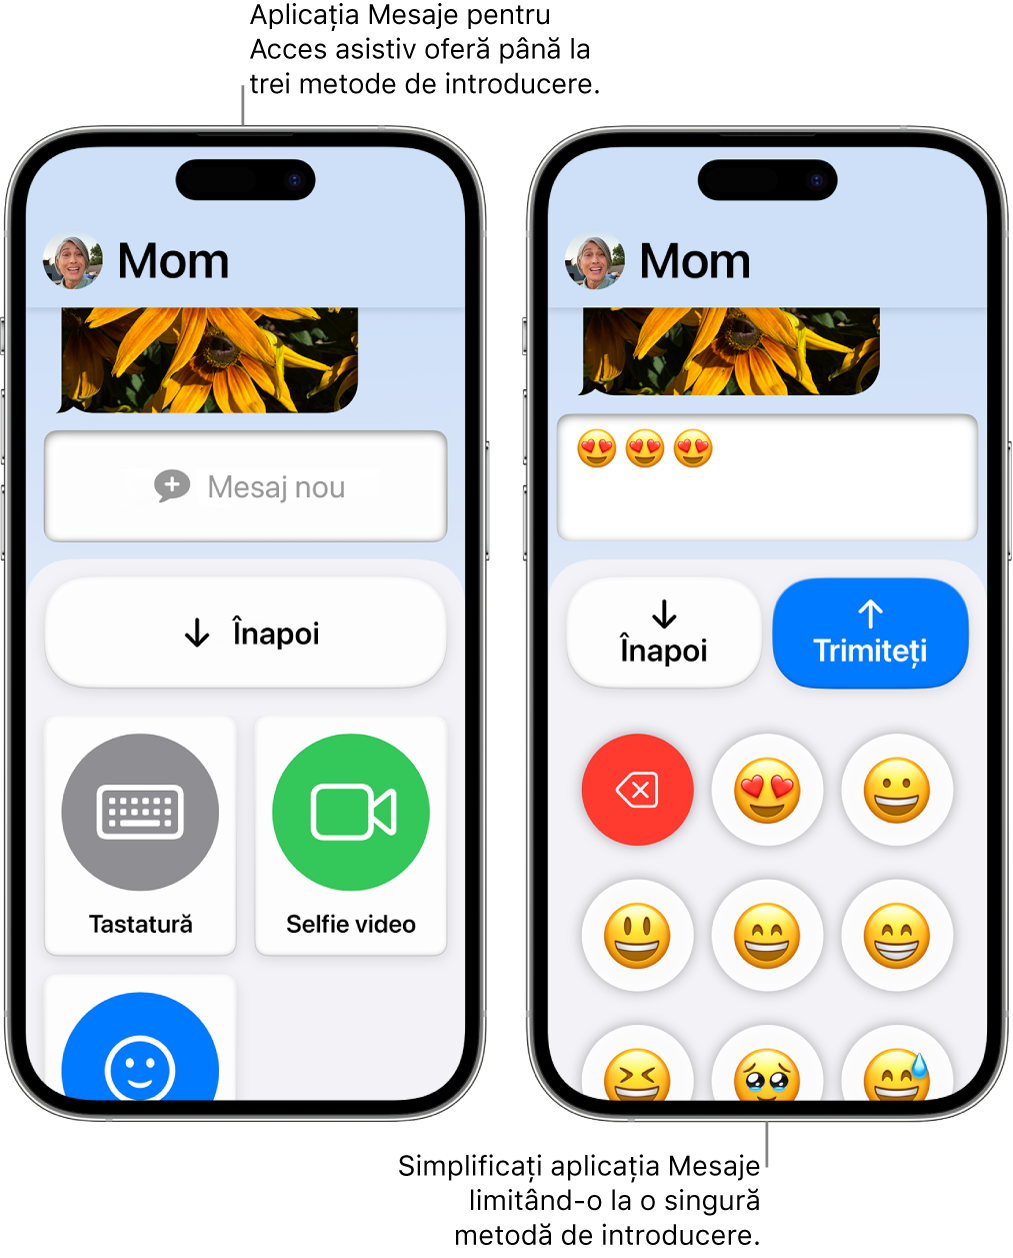 Două dispozitive iPhone în modul Acces asistiv. Un iPhone afișează aplicația Mesaje cu metode de introducere dintre care poate alege utilizatorul (de exemplu, Tastatură sau Selfie video). Celălalt afișează un mesaj care este trimis utilizând o tastatură doar cu emojiuri.